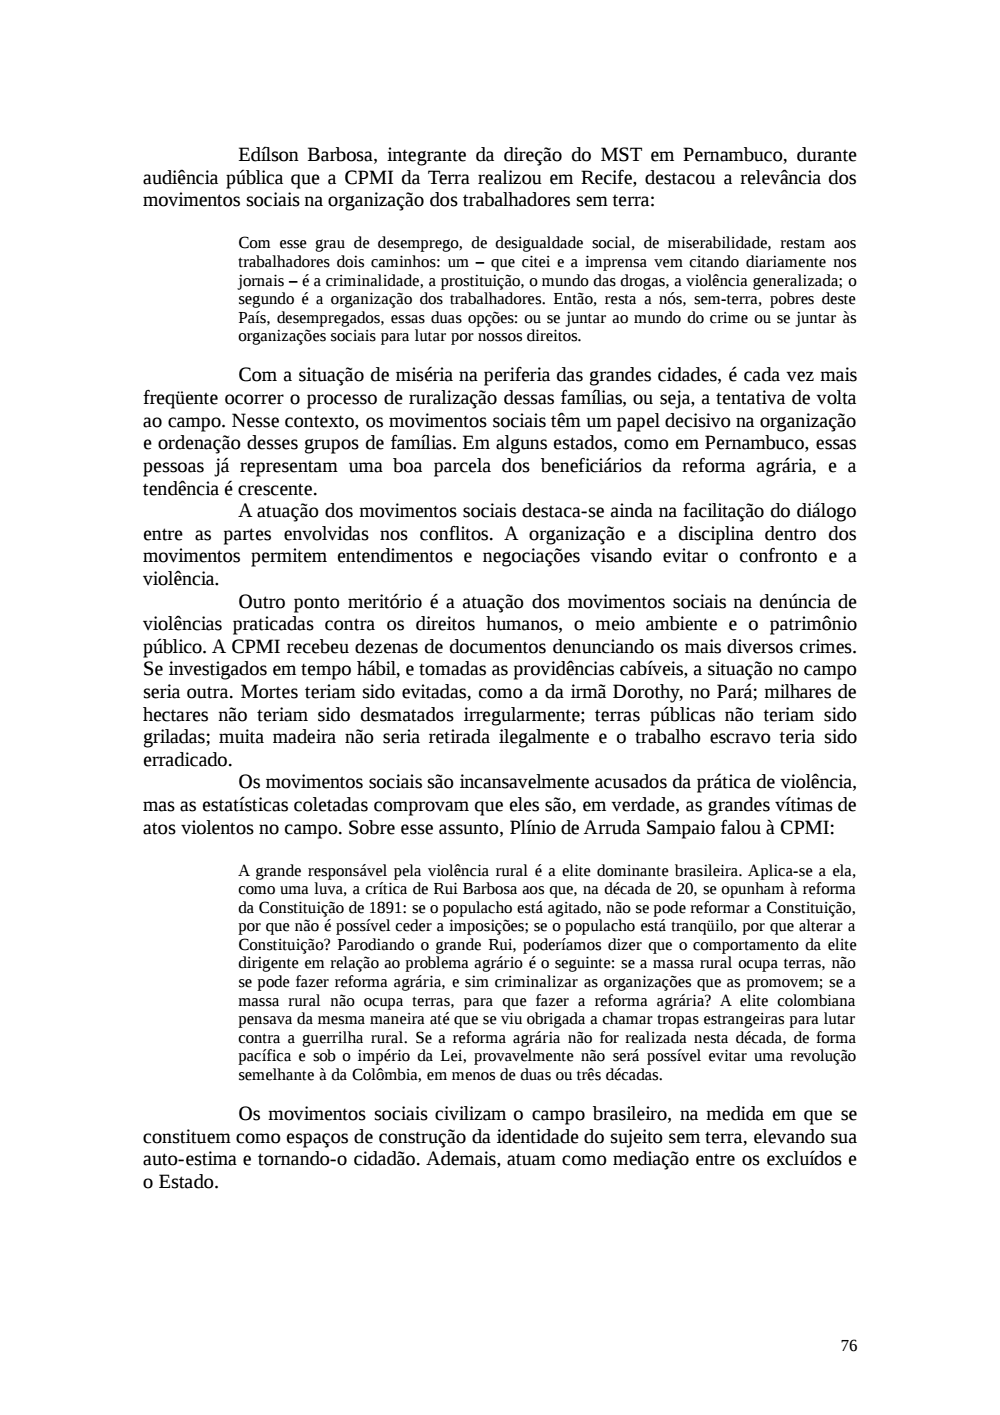 Page 76 from Relatório final da comissão